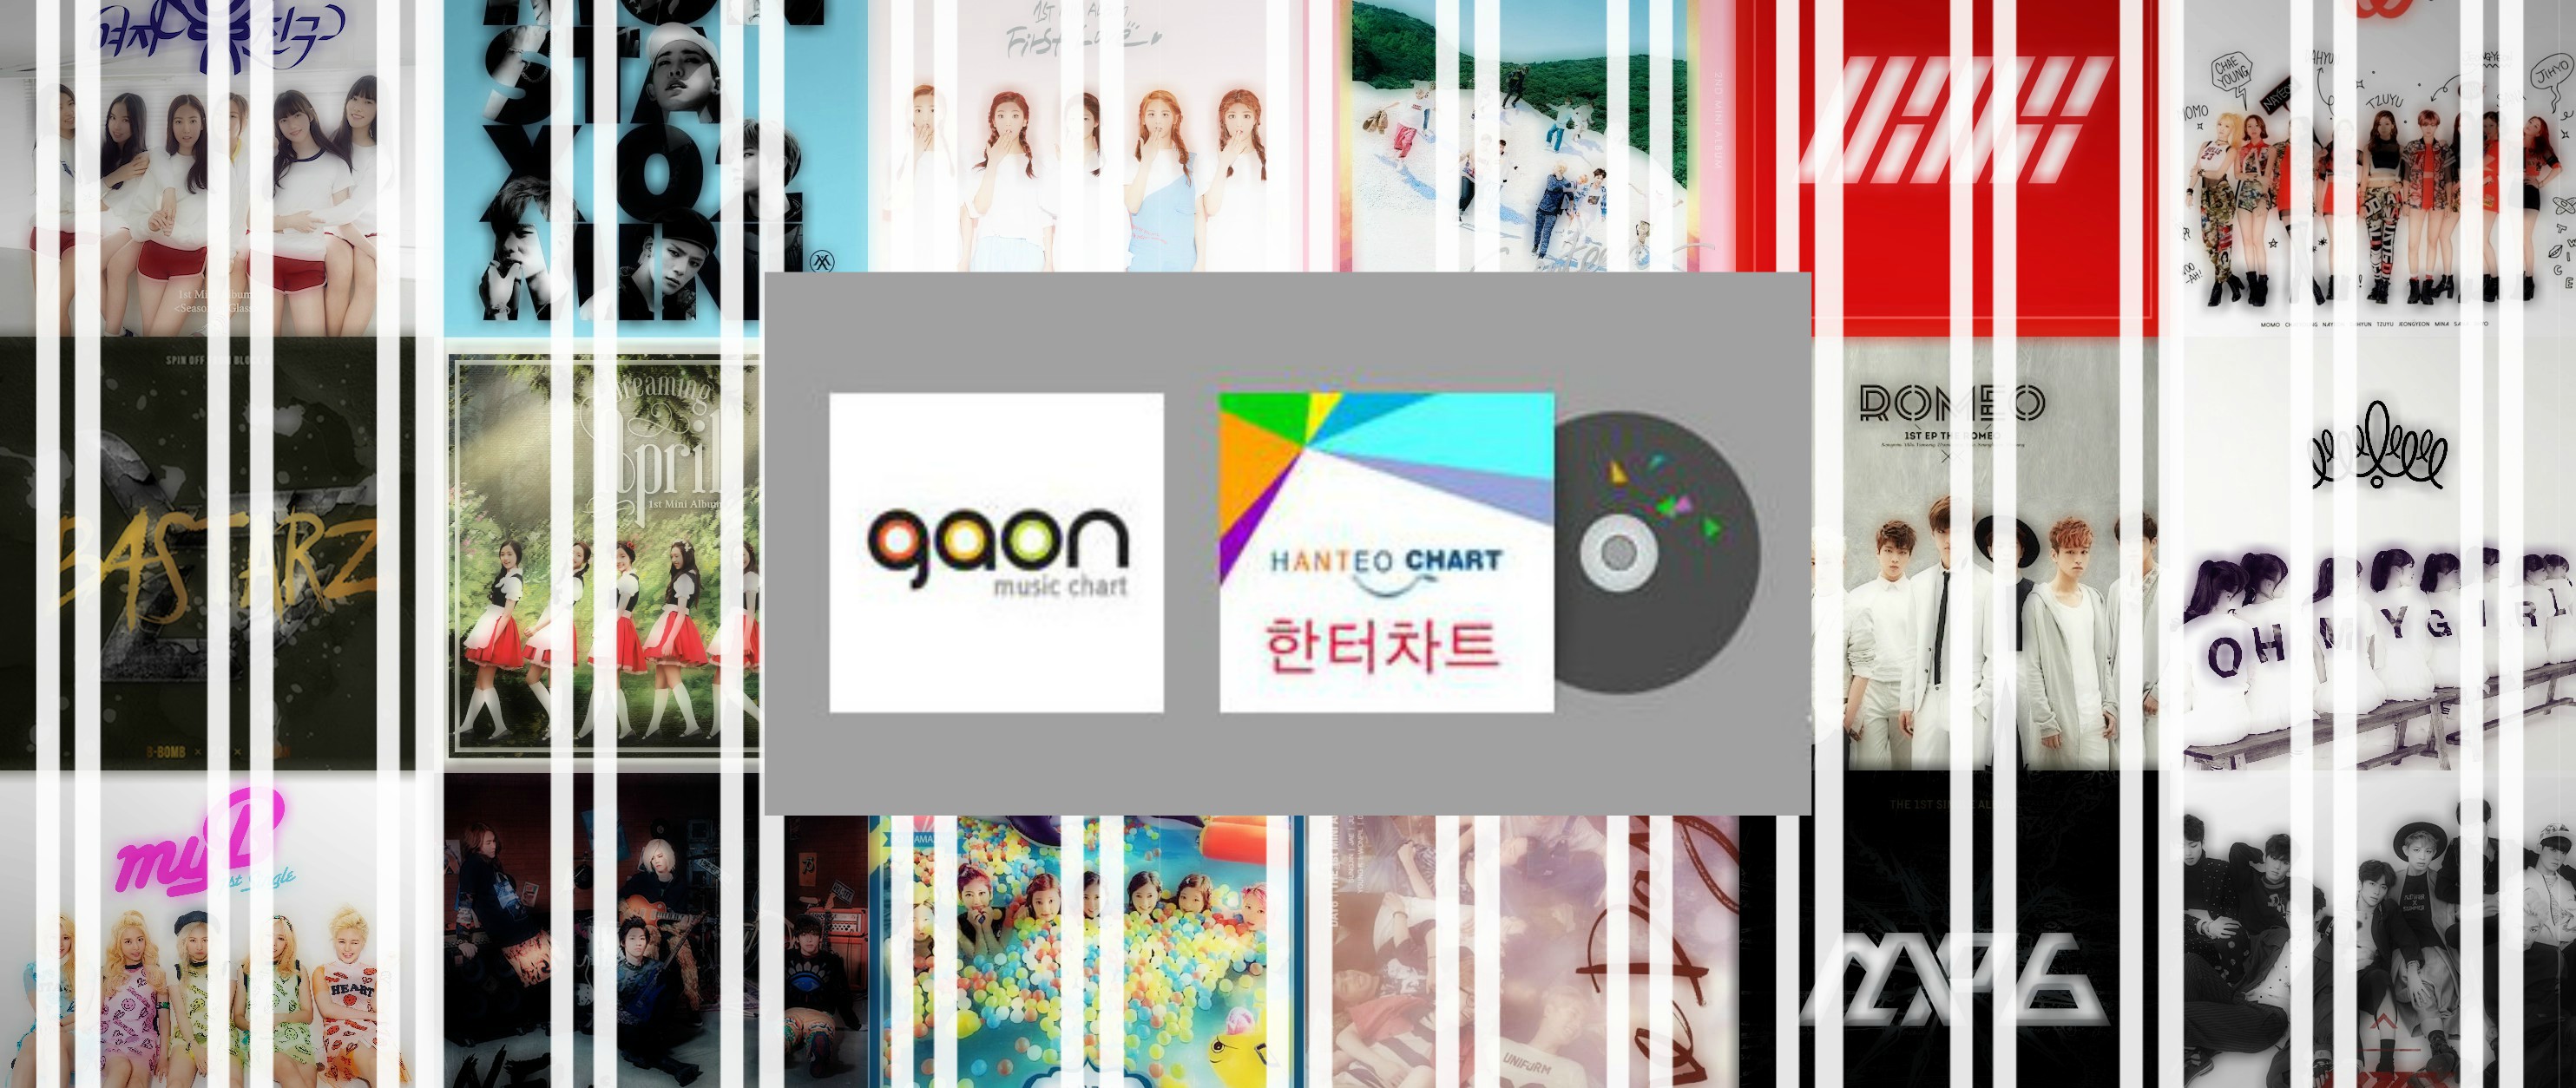 Kpop Market Hanteo Gaon Chart Family Shop